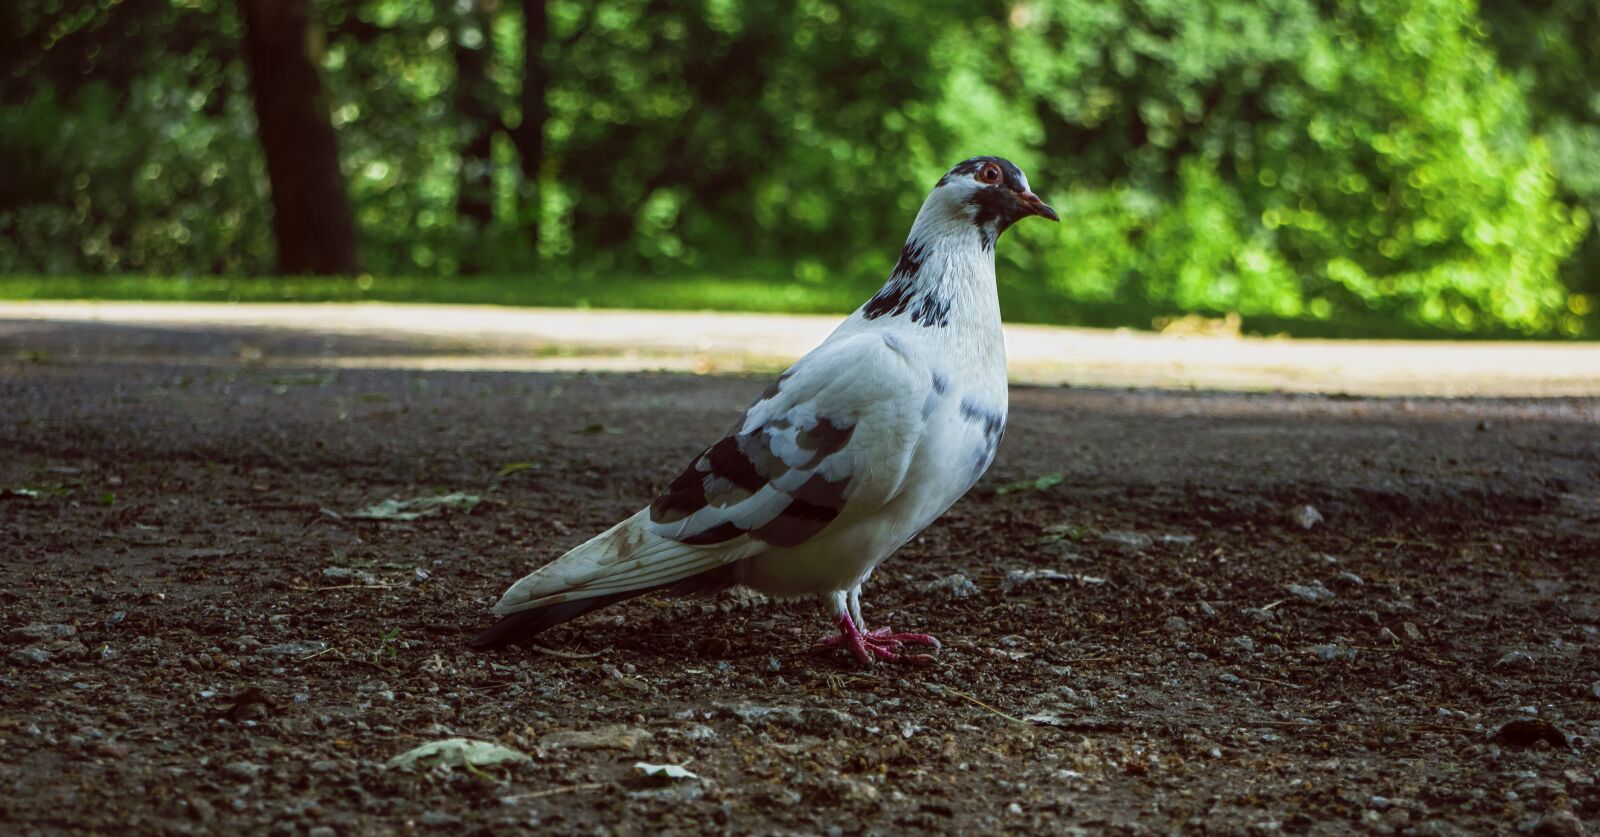 Canon EOS M sample photo. Dove, nature, bird photography